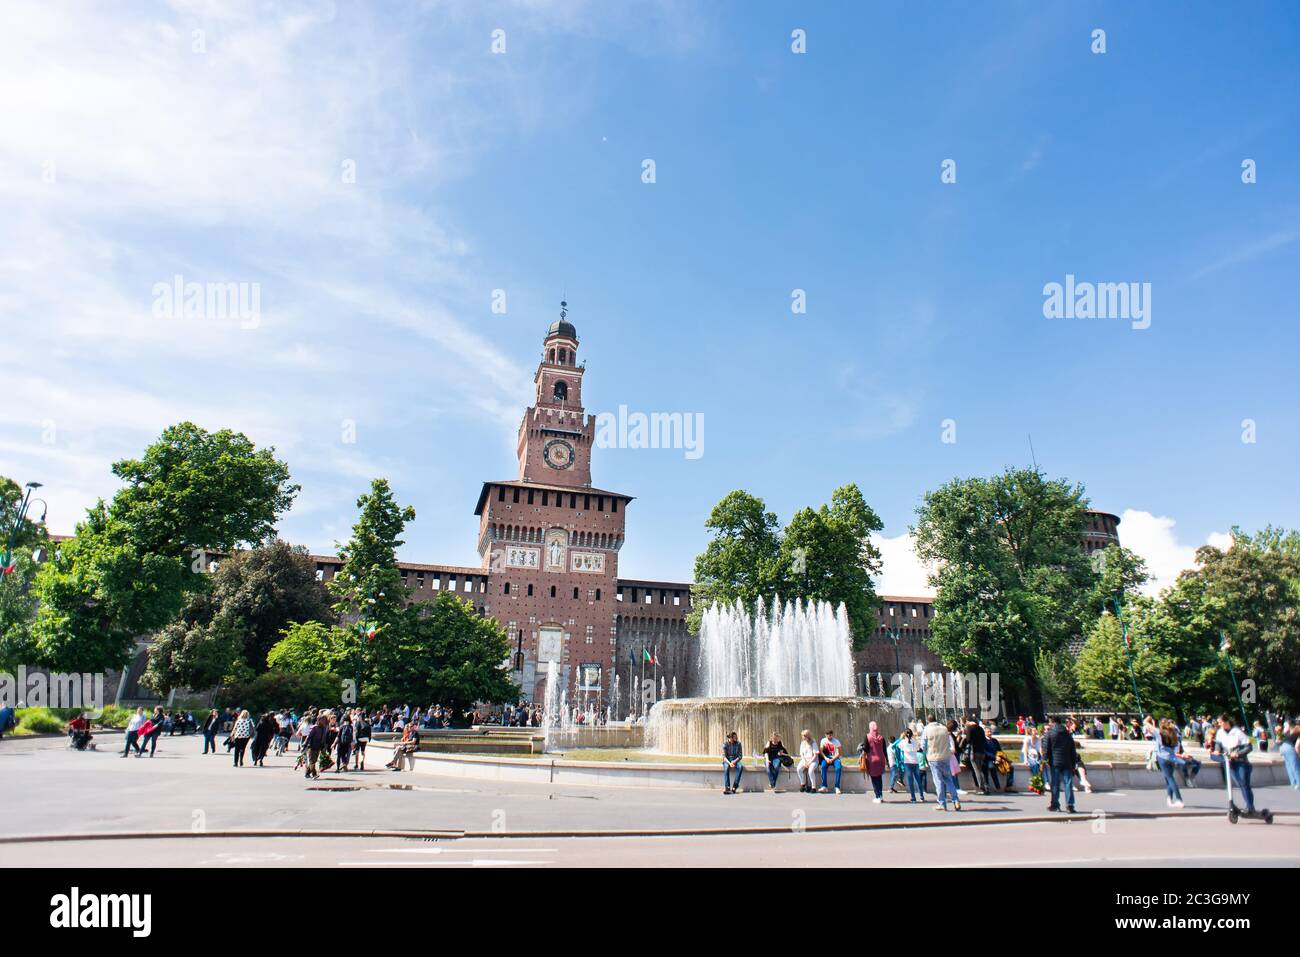 Mailand. Italien - 21. Mai 2019: Eingang zum Castello Sforzesco. Brunnen mit Touristen. Filarete Tower. Stockfoto